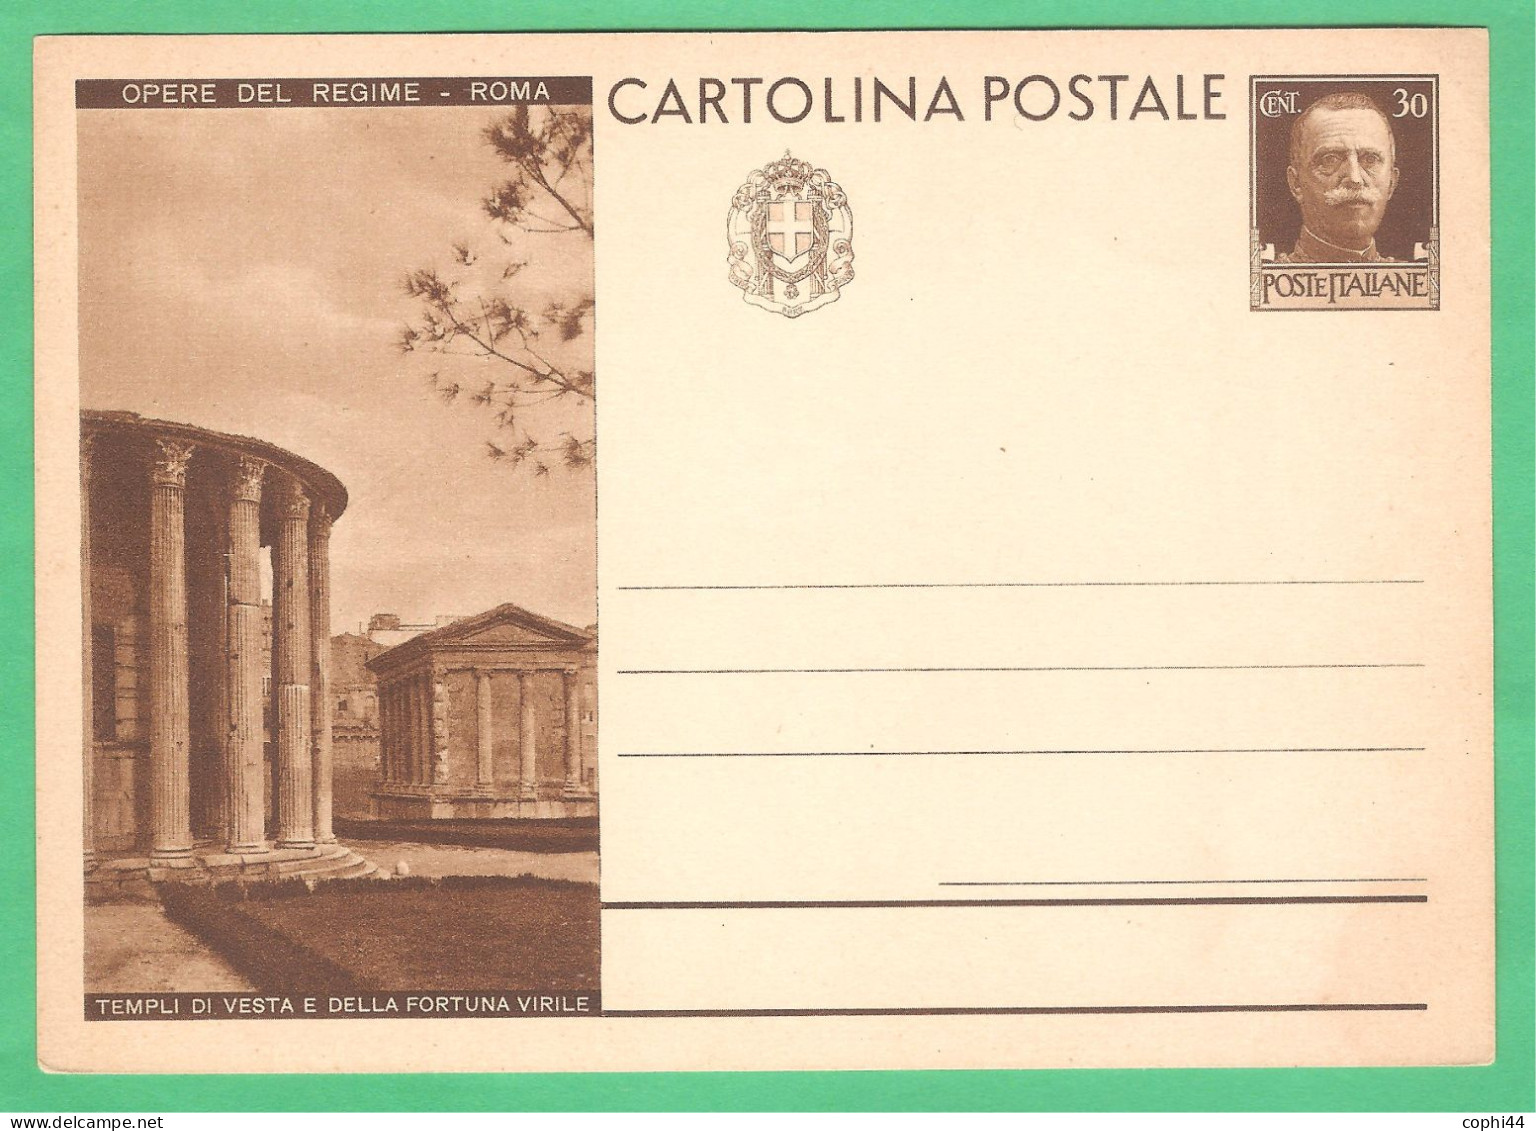 REGNO D'ITALIA 1931 CARTOLINA POSTALE VEIII OPERE DEL REGIME TEMPLI VESTA E FORTUNA 30 C Bruno (FILAGRANO C70-22) NUOVA - Entiers Postaux